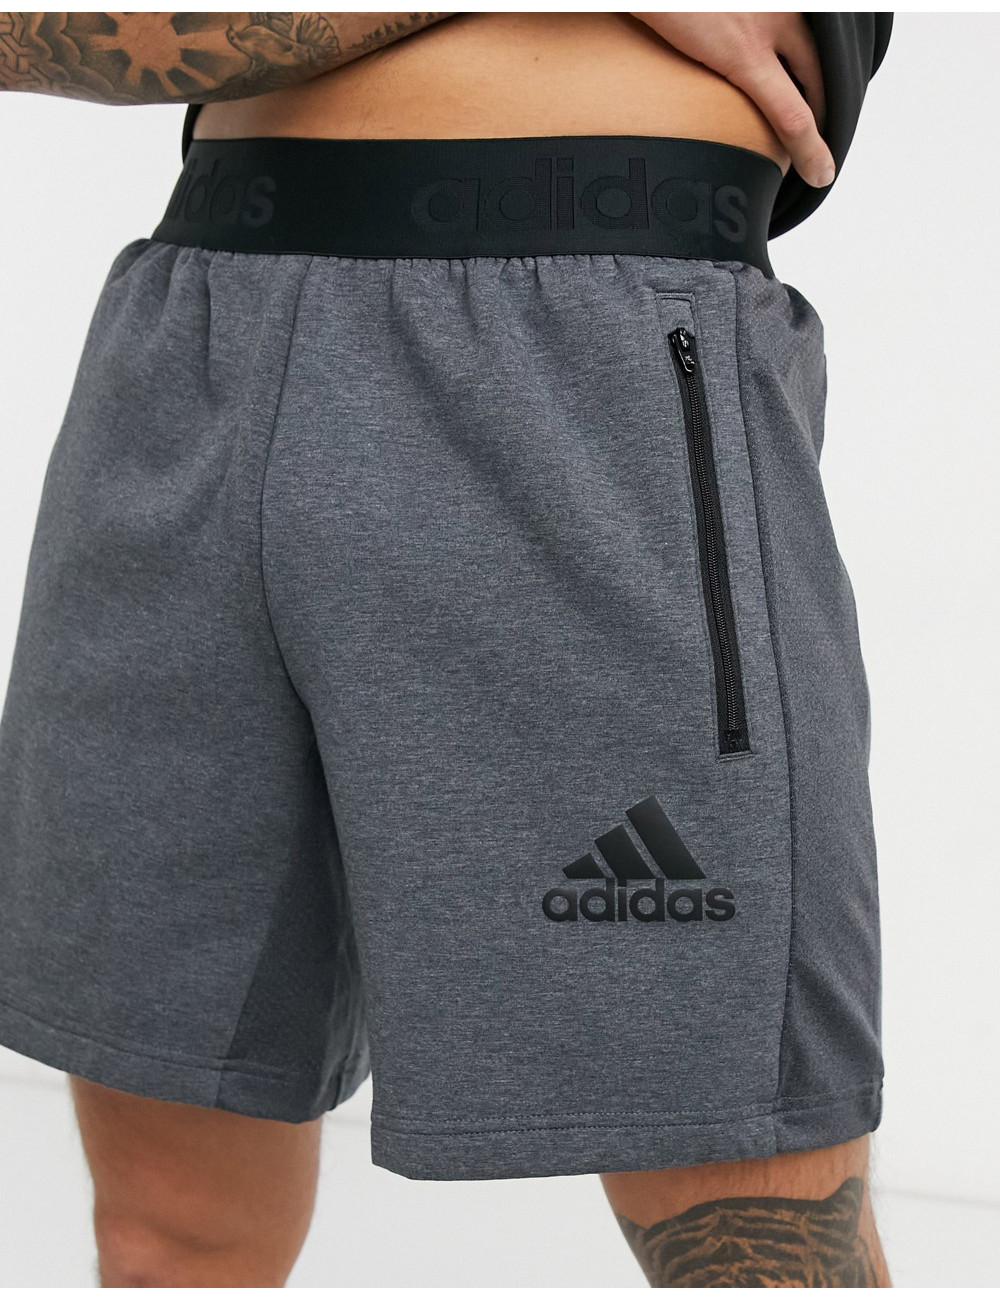 adidas Training shorts in grey